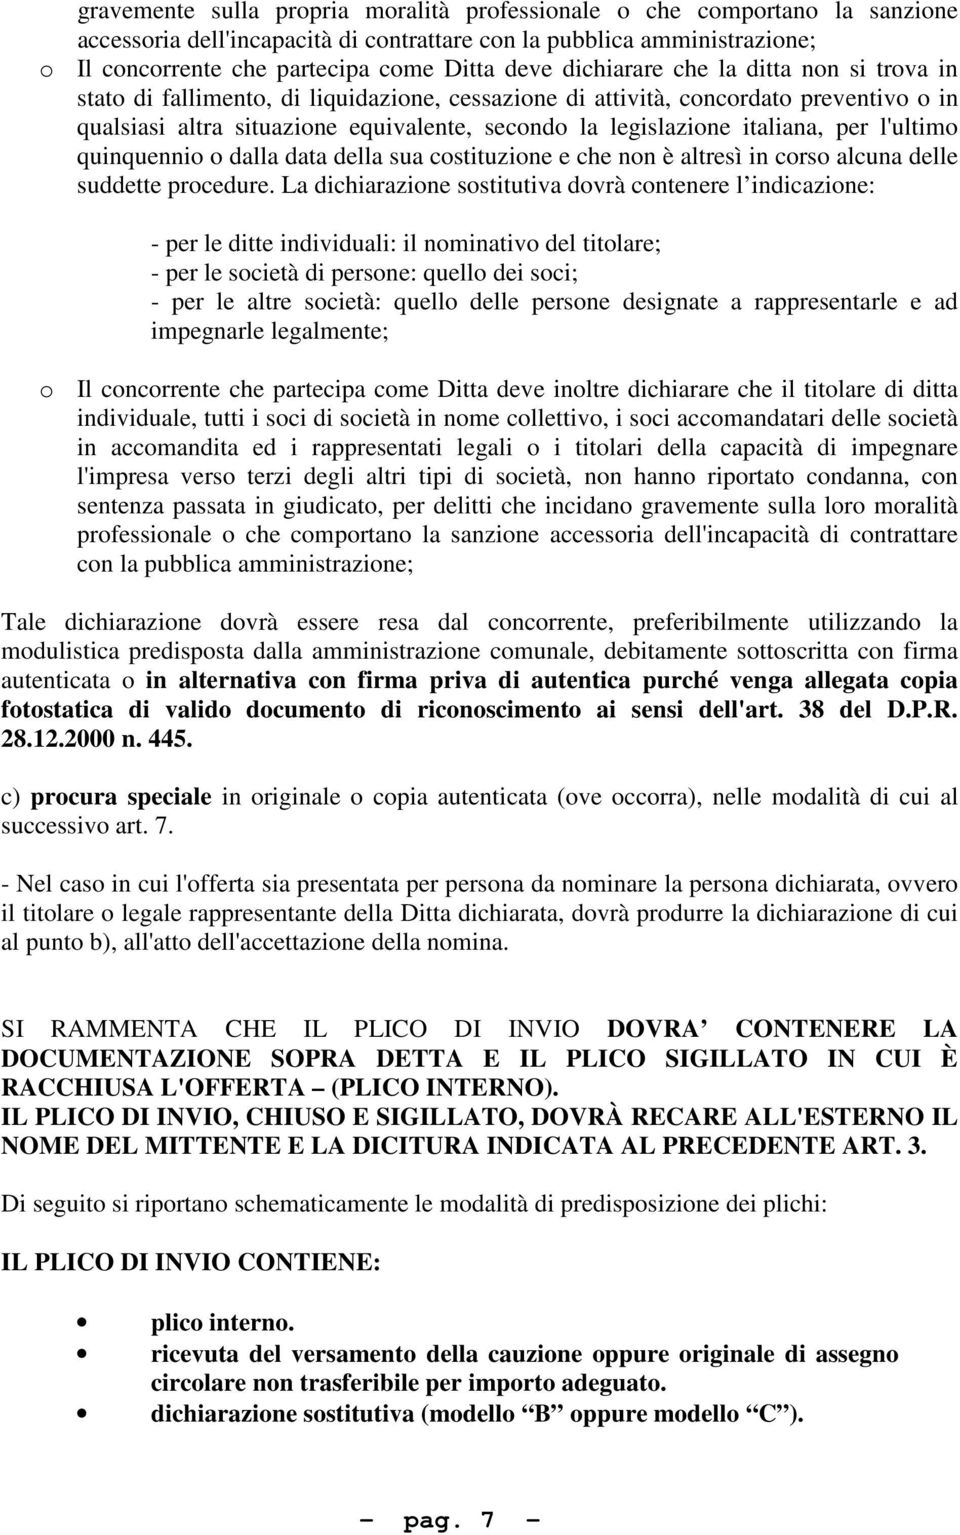 italiana, per l'ultimo quinquennio o dalla data della sua costituzione e che non è altresì in corso alcuna delle suddette procedure.